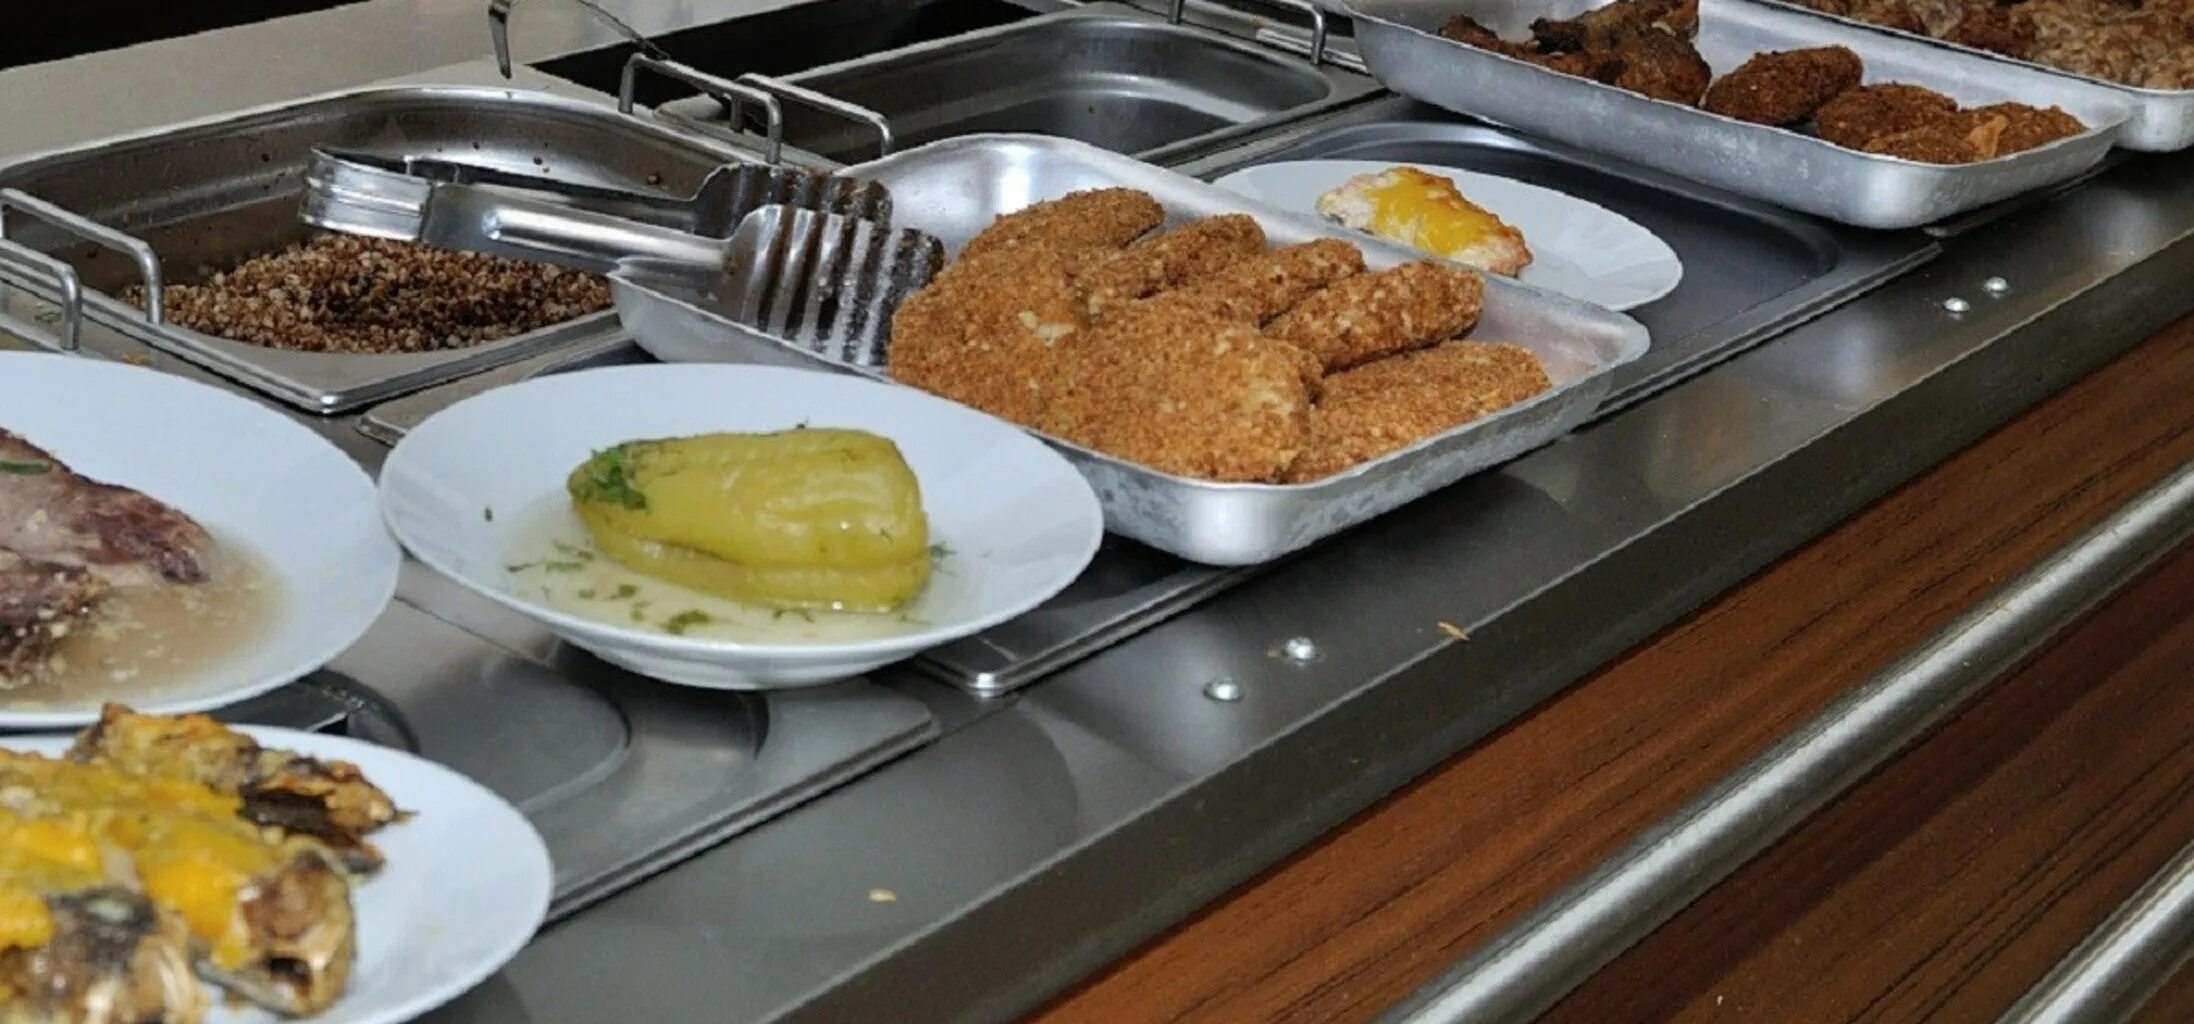 Блюда для школьного питания. Еда в школьной столовой. Школьная столовая. Обед в школьной столовой. Школьная столовая еда.